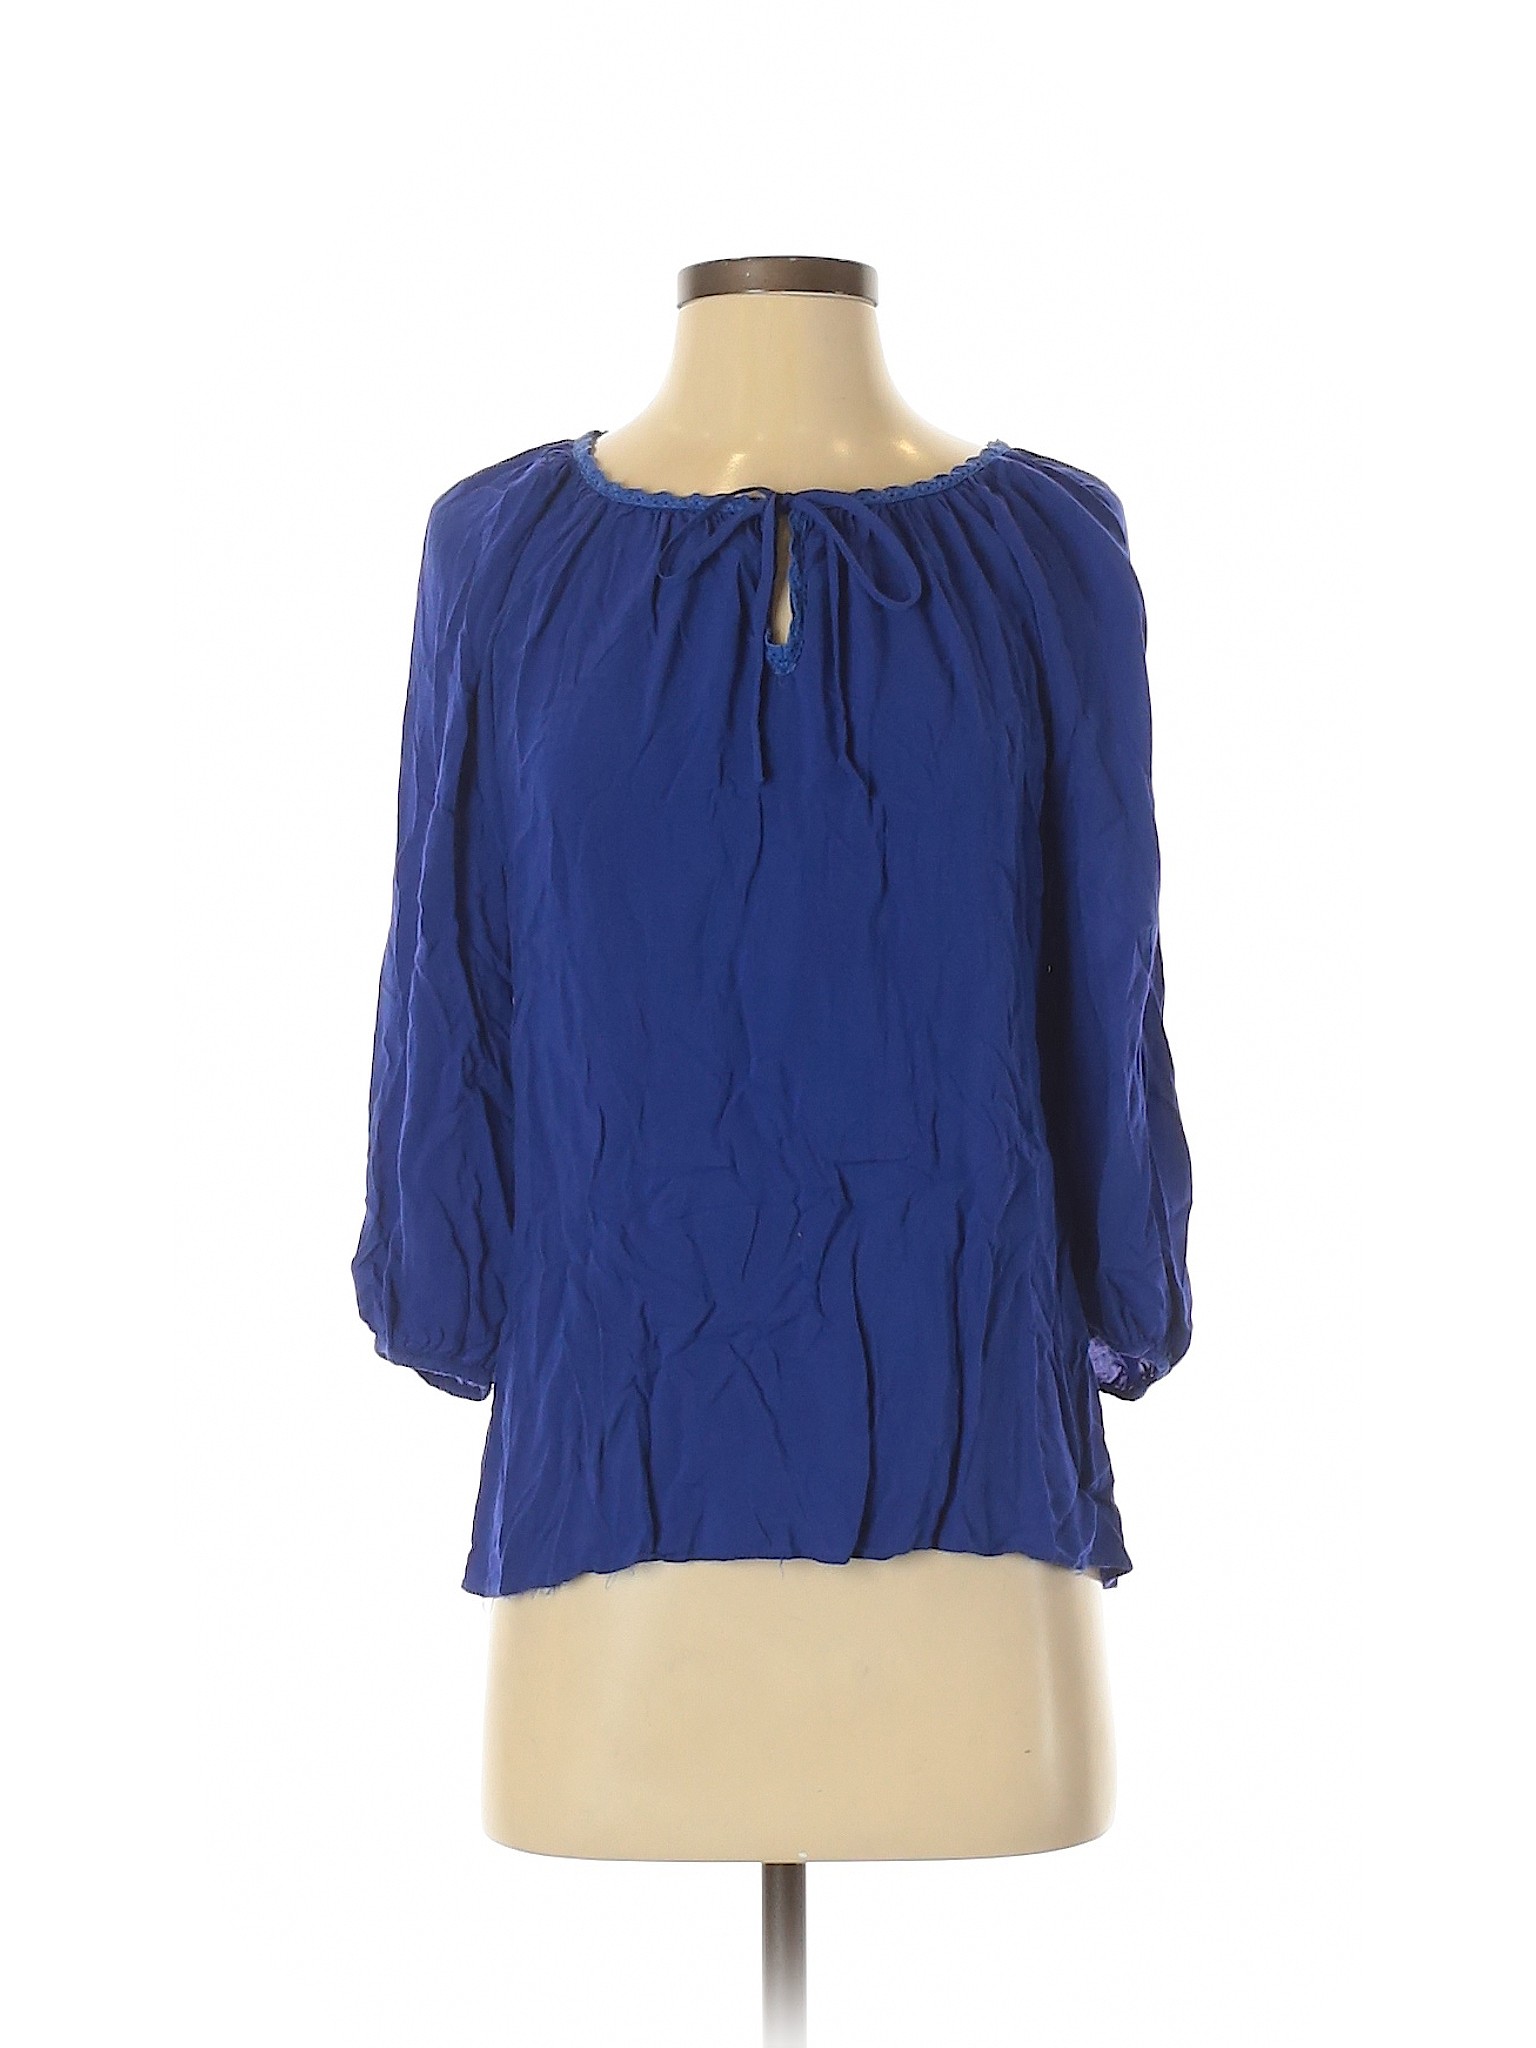 Spense Women Blue 3/4 Sleeve Blouse S | eBay